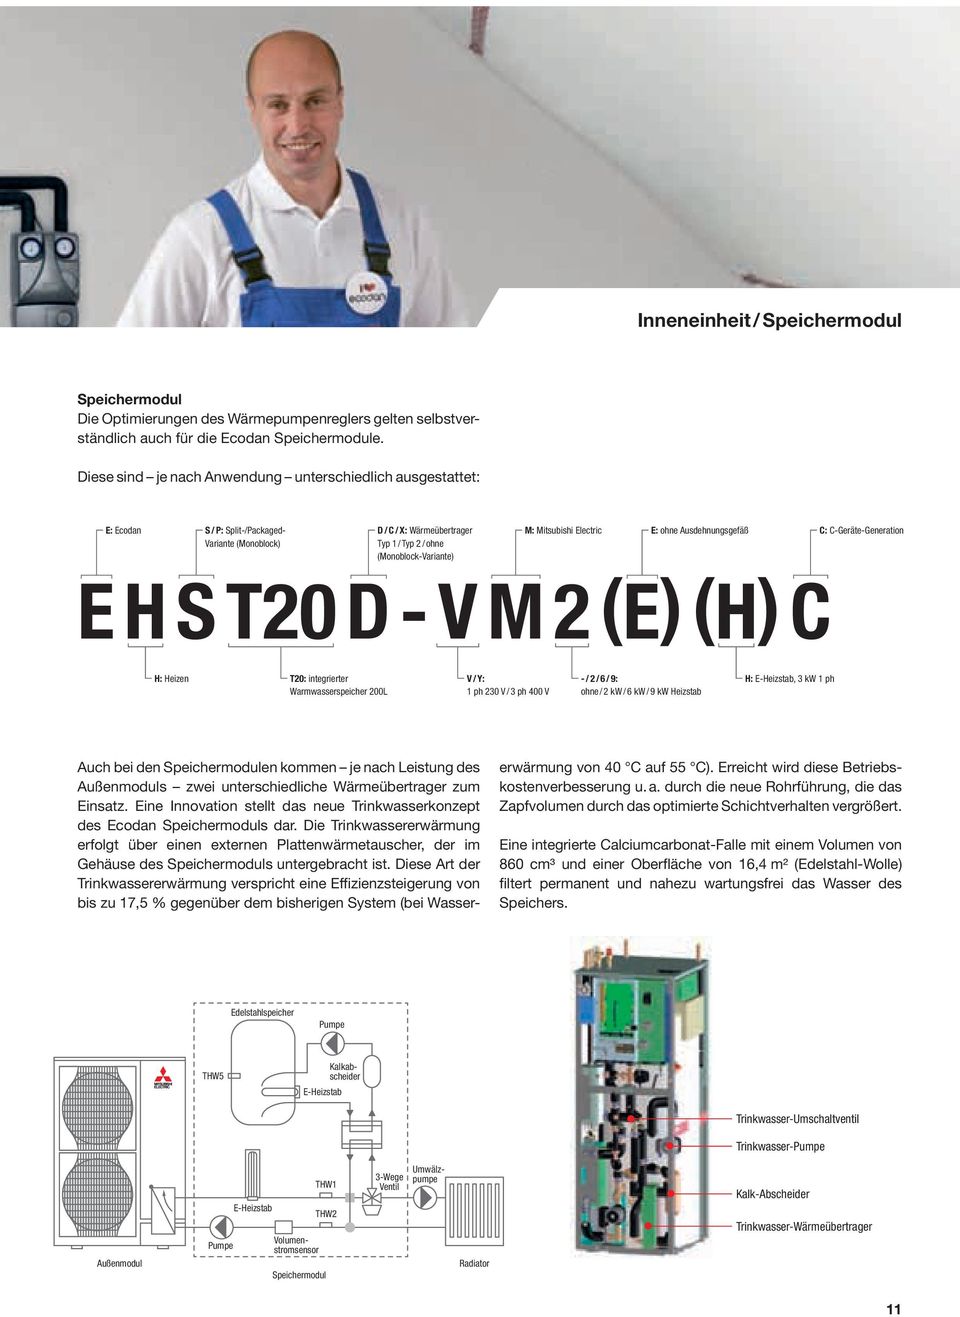 Electric E: ohne Ausdehnungsgefäß C: C-Geräte-Generation E H S T20 D - V M 2 (E) (H) C H: Heizen T20: integrierter Warmwasserspeicher 200L V / Y: 1 ph 230 V / 3 ph 400 V - / 2 / 6 / 9: ohne / 2 kw /